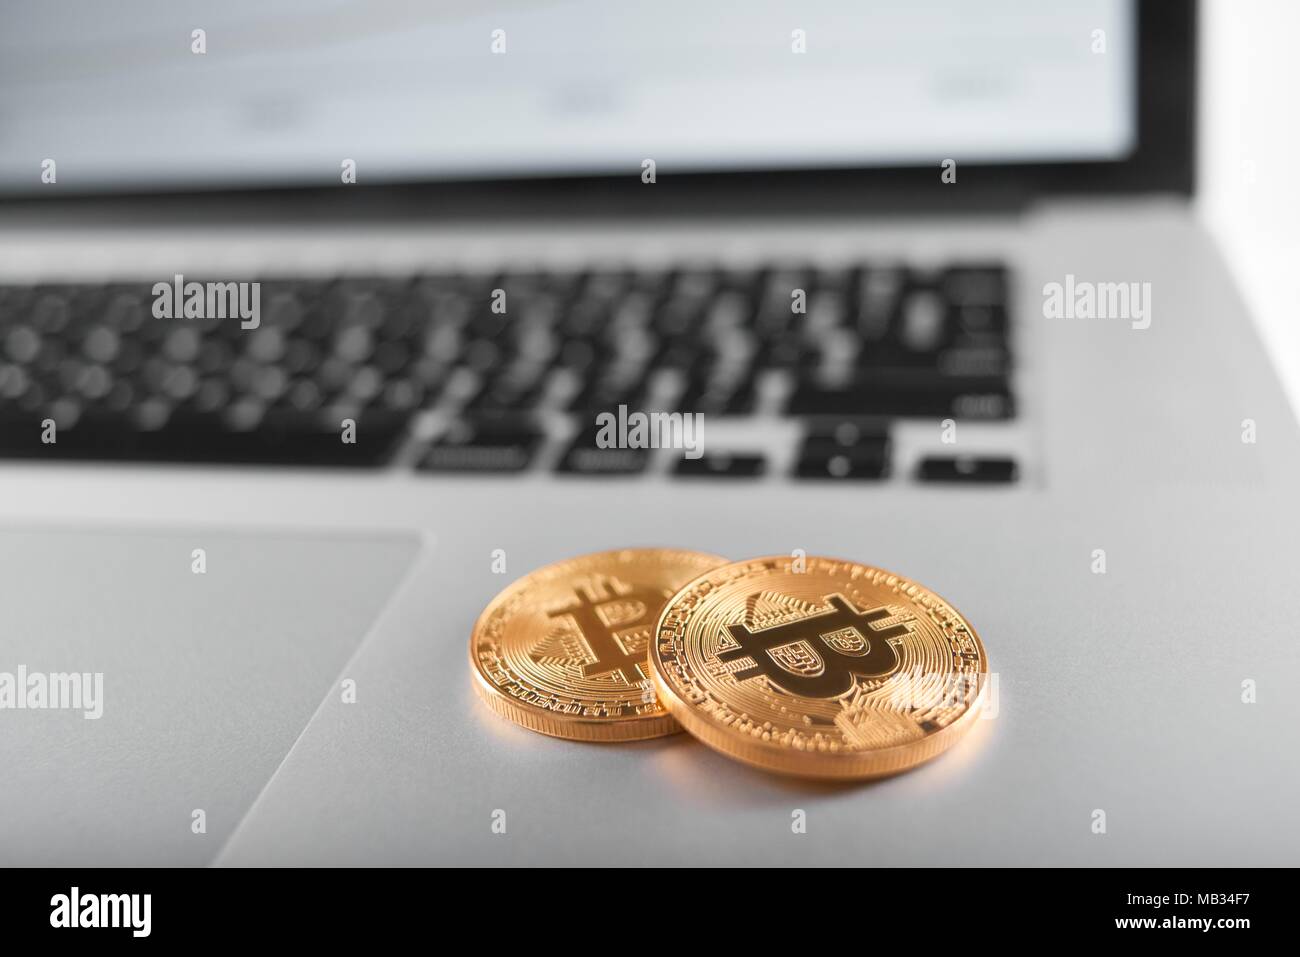 Deux golden bitcoins comme cryptocurrencies principal placé sur argent clavier d'ordinateur portable. La monnaie électronique de l'argent virtuel numérique blockchain tendance future banking business web innovant d'échange de l'exploitation minière Banque D'Images